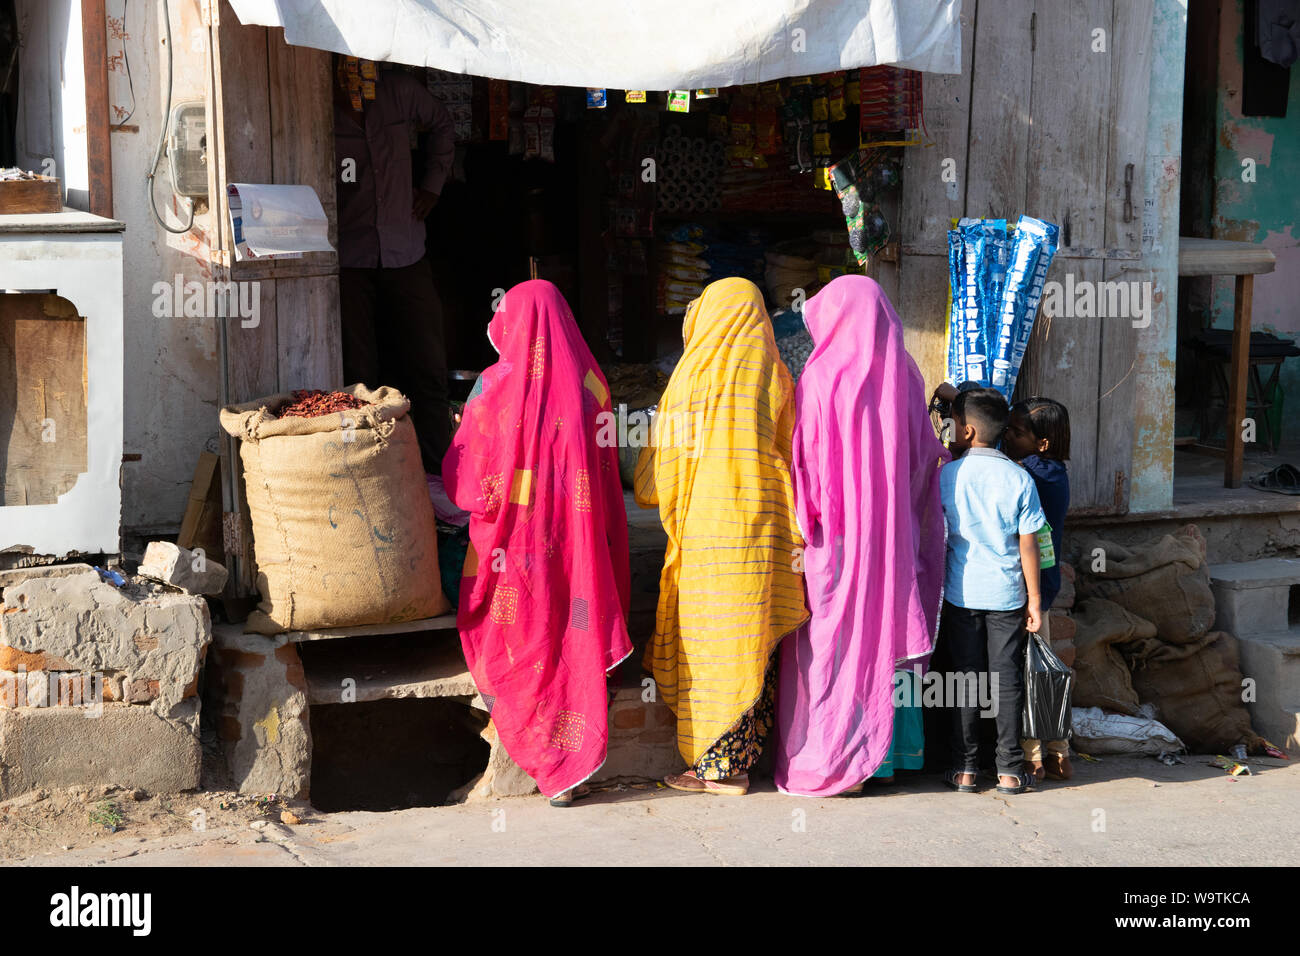 Drei Frauen in bunten Saris vor einem Geschäft stehend (Rücken zur Kamera), zwei Kinder stehen neben ihnen. Straßenszene in Mandawa (Rajasthan) in Ind Stock Photo